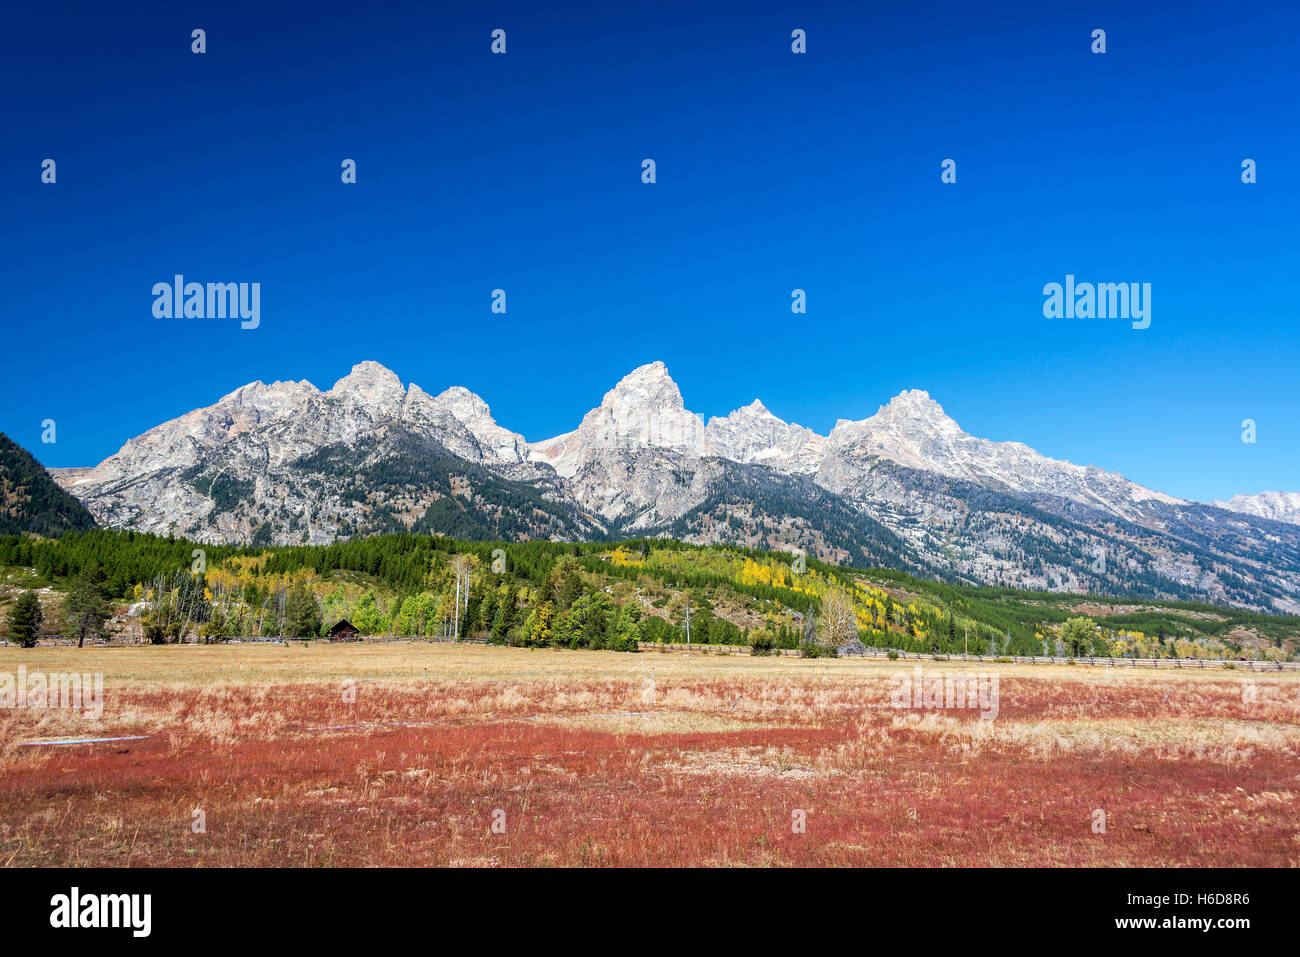 Bello e colorato paesaggio della Teton Range in Grand Teton National Park Foto Stock